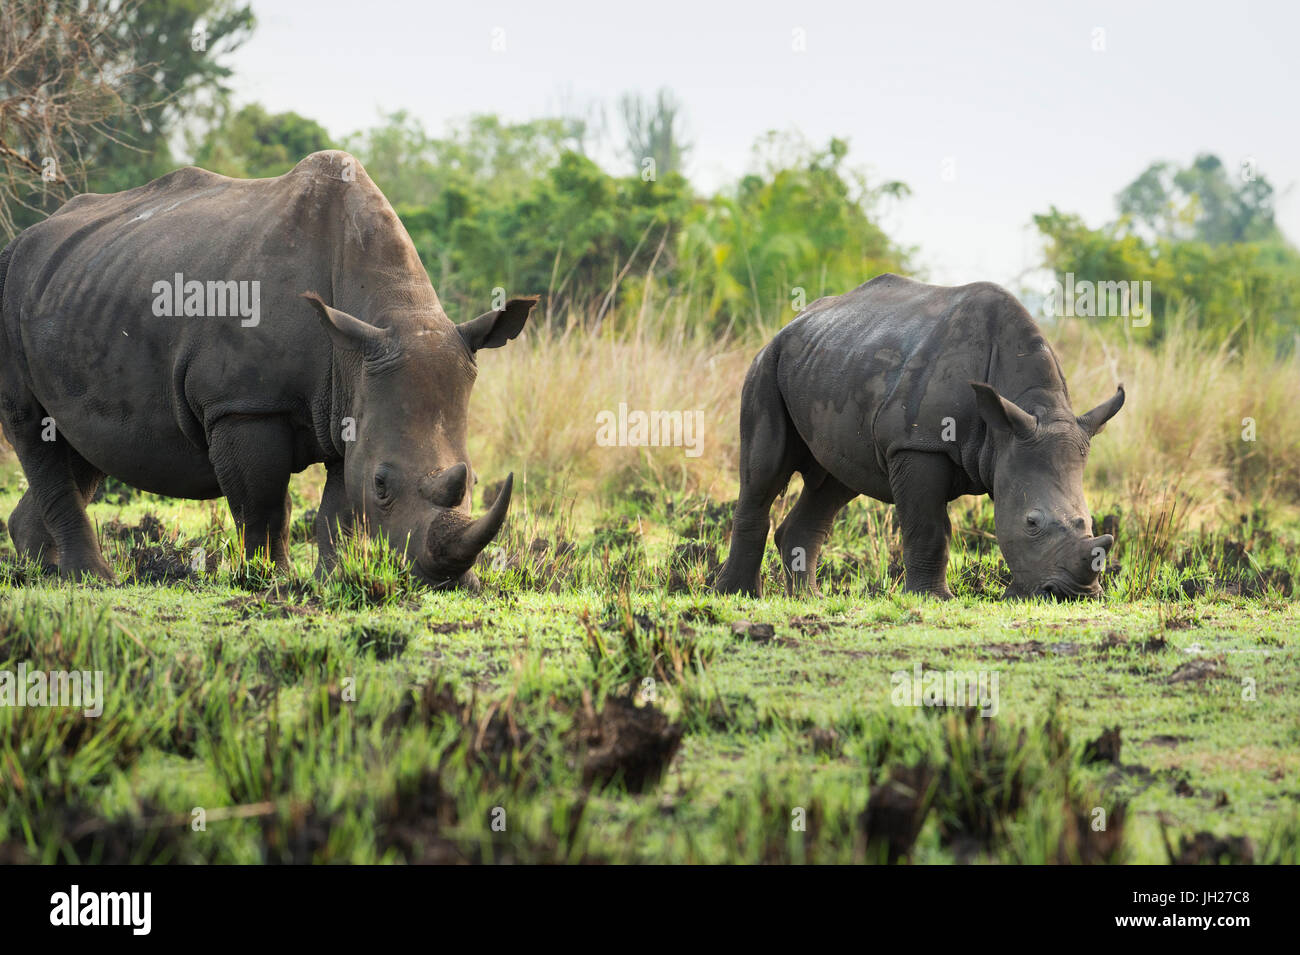 White Rhinoceros (Ceratotherium simum), Uganda, Africa Stock Photo